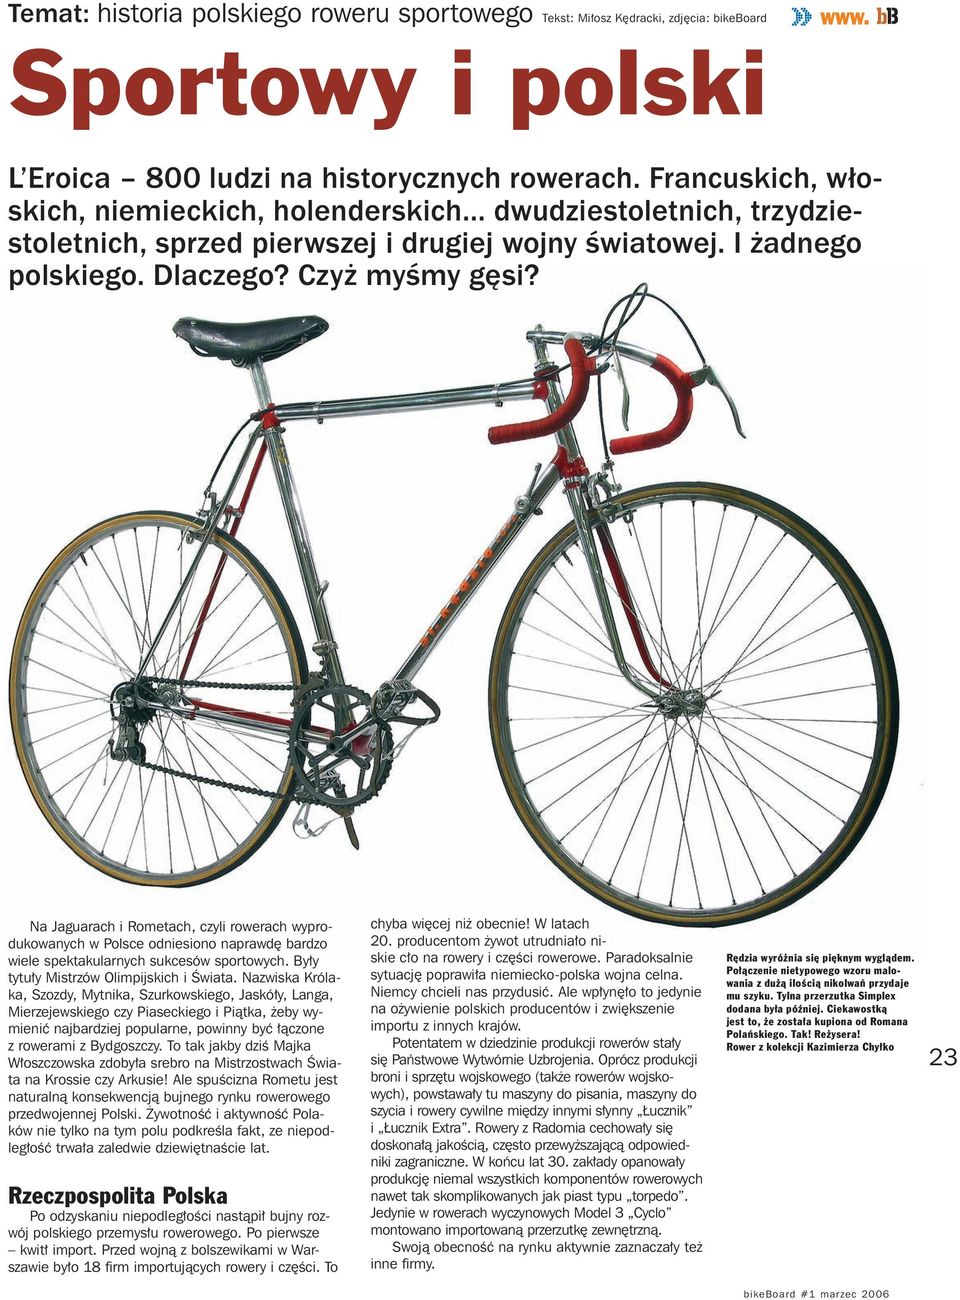 Na Jaguarach i Rometach, czyli rowerach wyprodukowanych w Polsce odniesiono naprawdę bardzo wiele spektakularnych sukcesów sportowych. Były tytuły Mistrzów Olimpijskich i Świata.